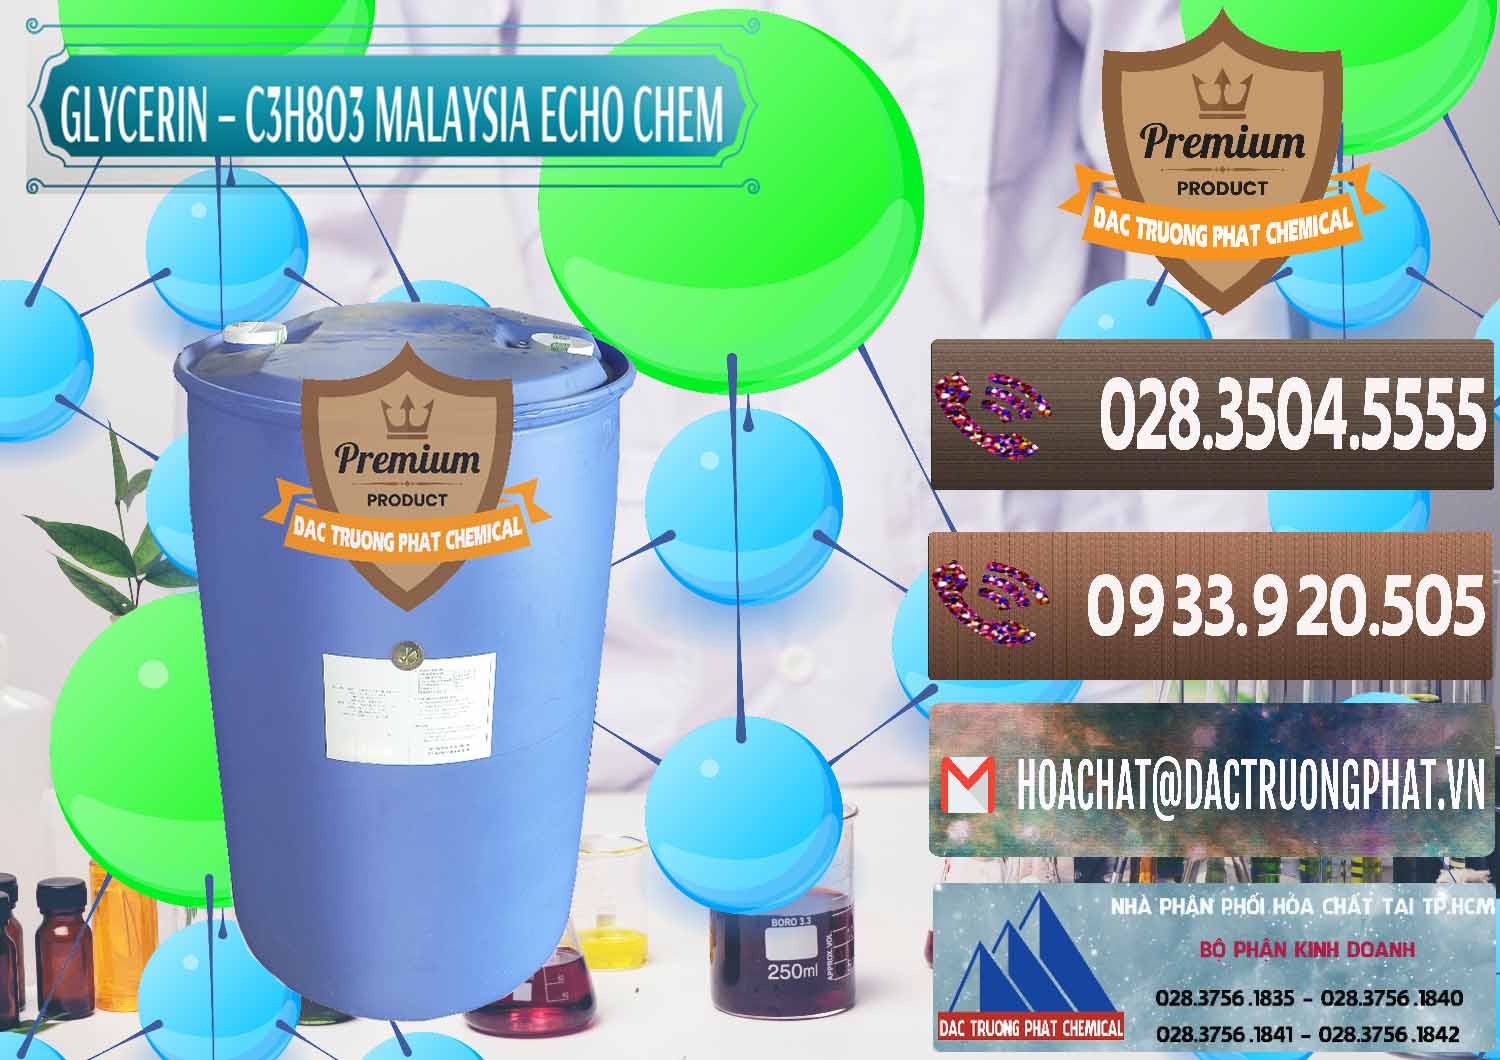 Cty kinh doanh ( bán ) Glycerin – C3H8O3 99.7% Echo Chem Malaysia - 0273 - Đơn vị chuyên phân phối - bán hóa chất tại TP.HCM - hoachatviet.net